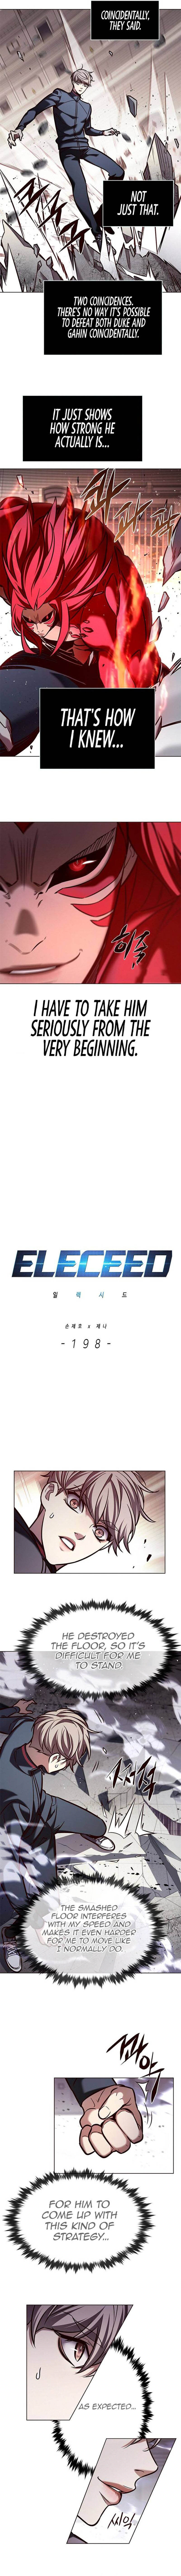 Eleceed 198 2